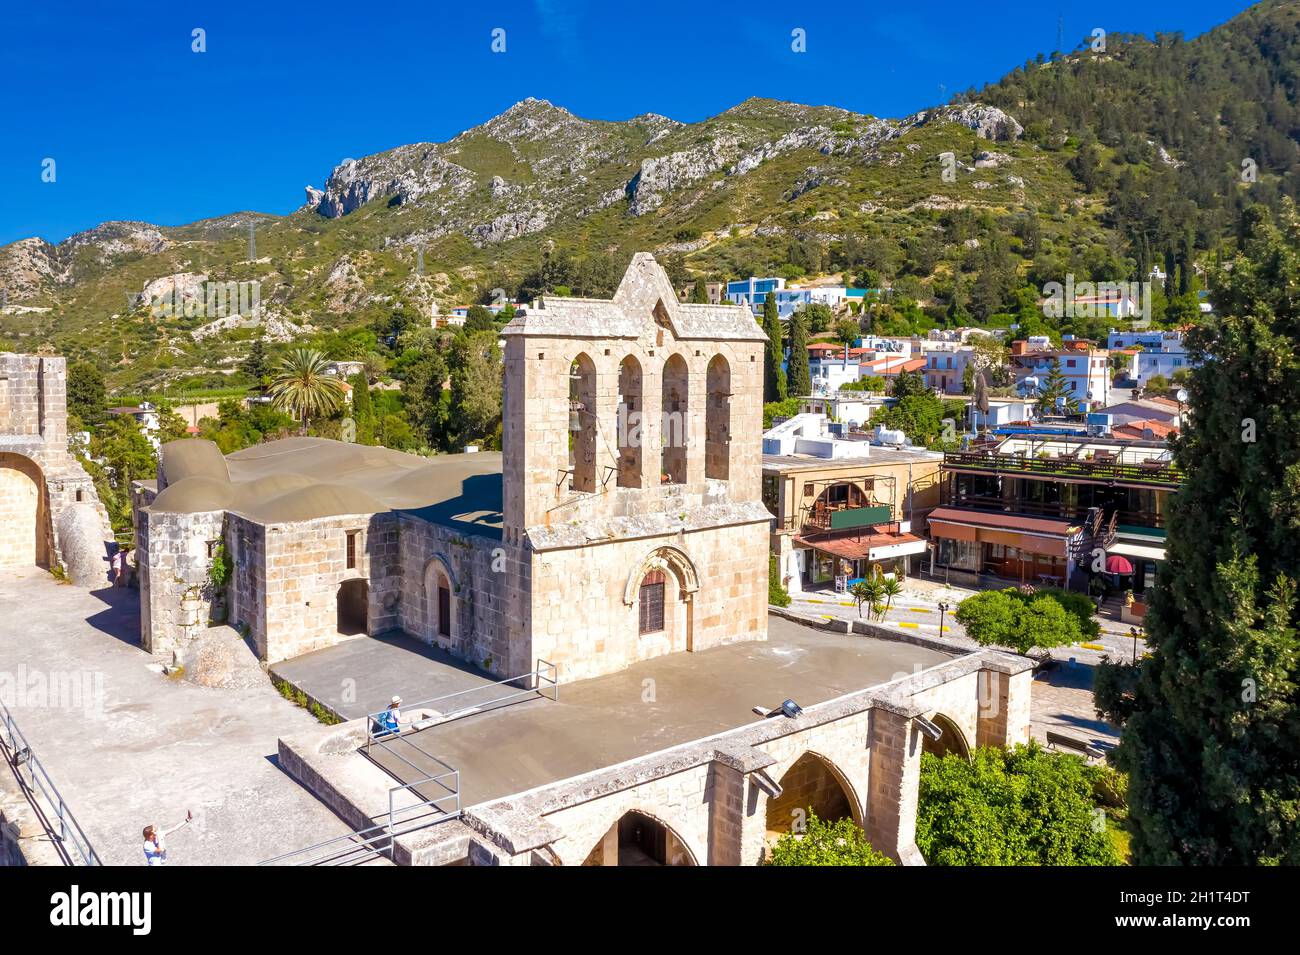 Mittelalterliche Abtei Bellapais mit Dorf im Hintergrund. Berühmte Touristenattraktion von Canons regelmäßig im 13. Jahrhundert gebaut. Kyrenia-Viertel, Cypr Stockfoto